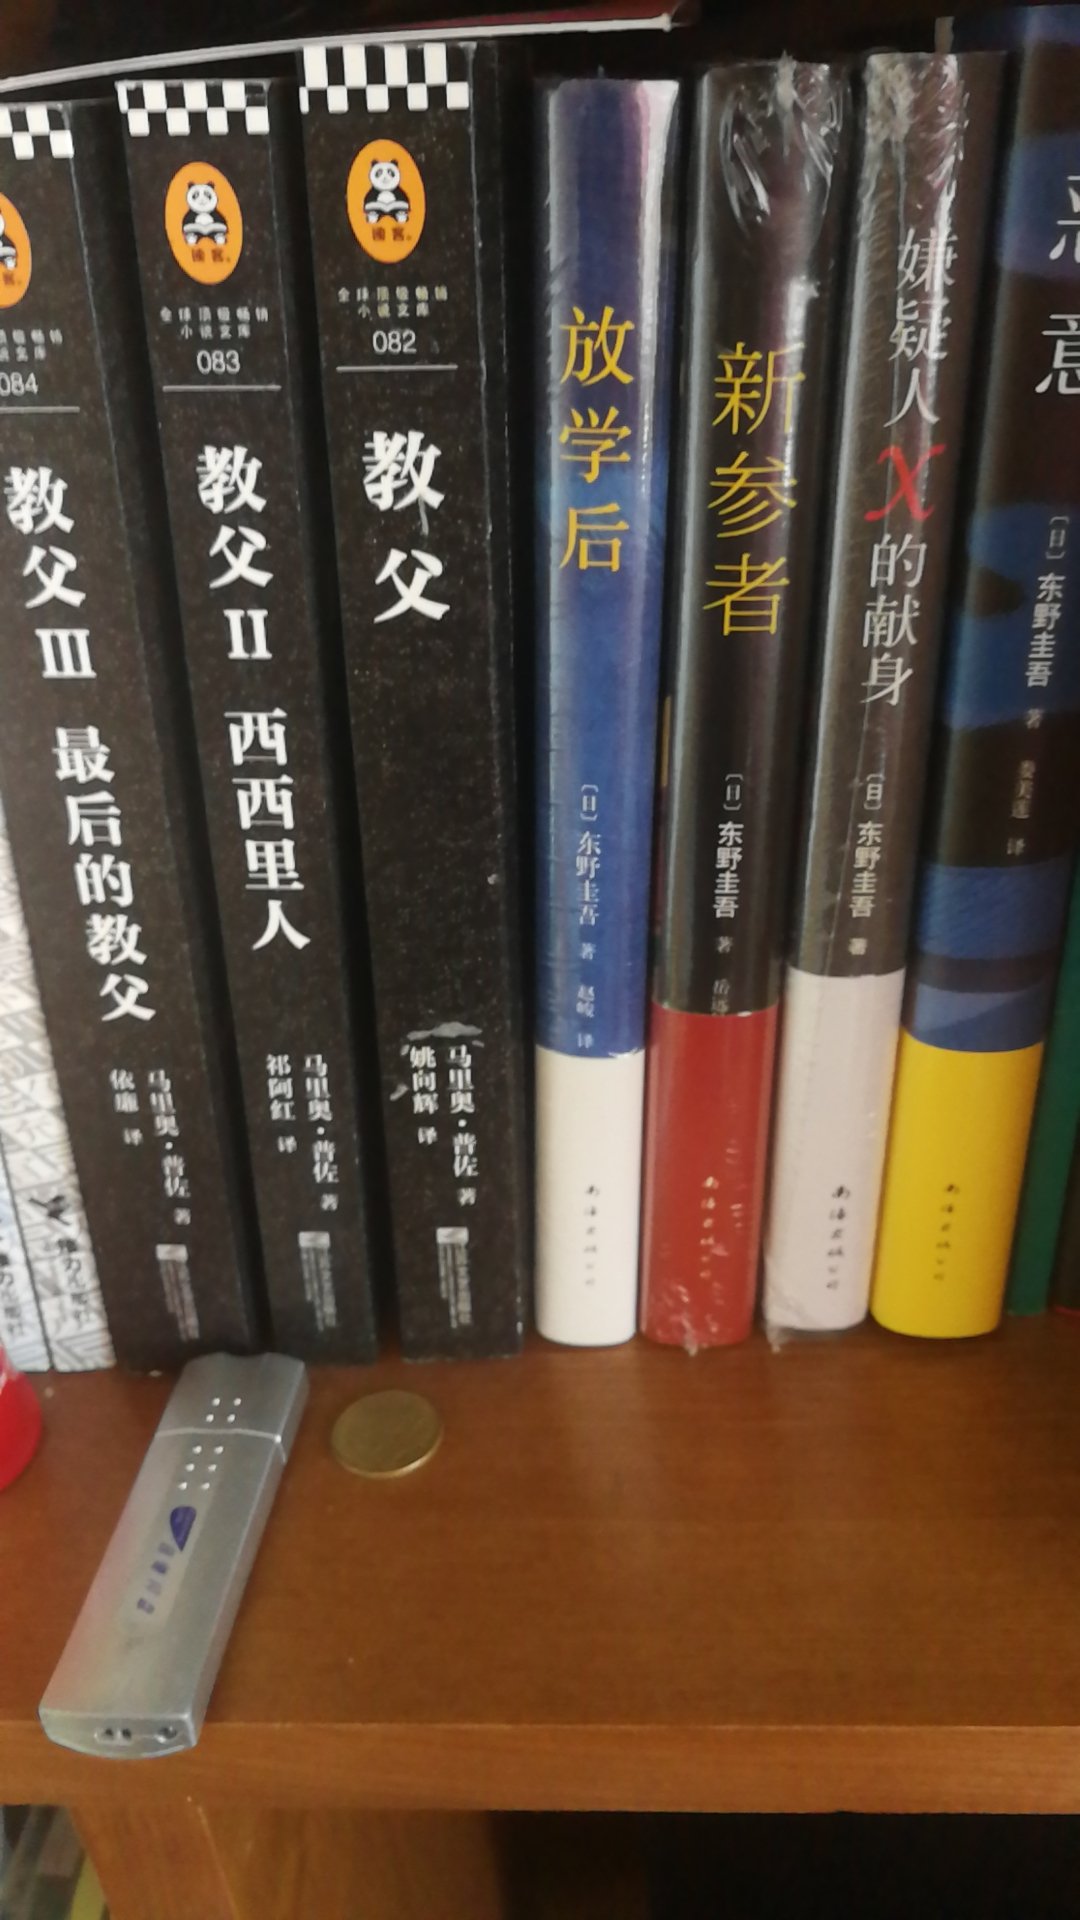 一套东野圭吾，不错。买了很多本他的书。